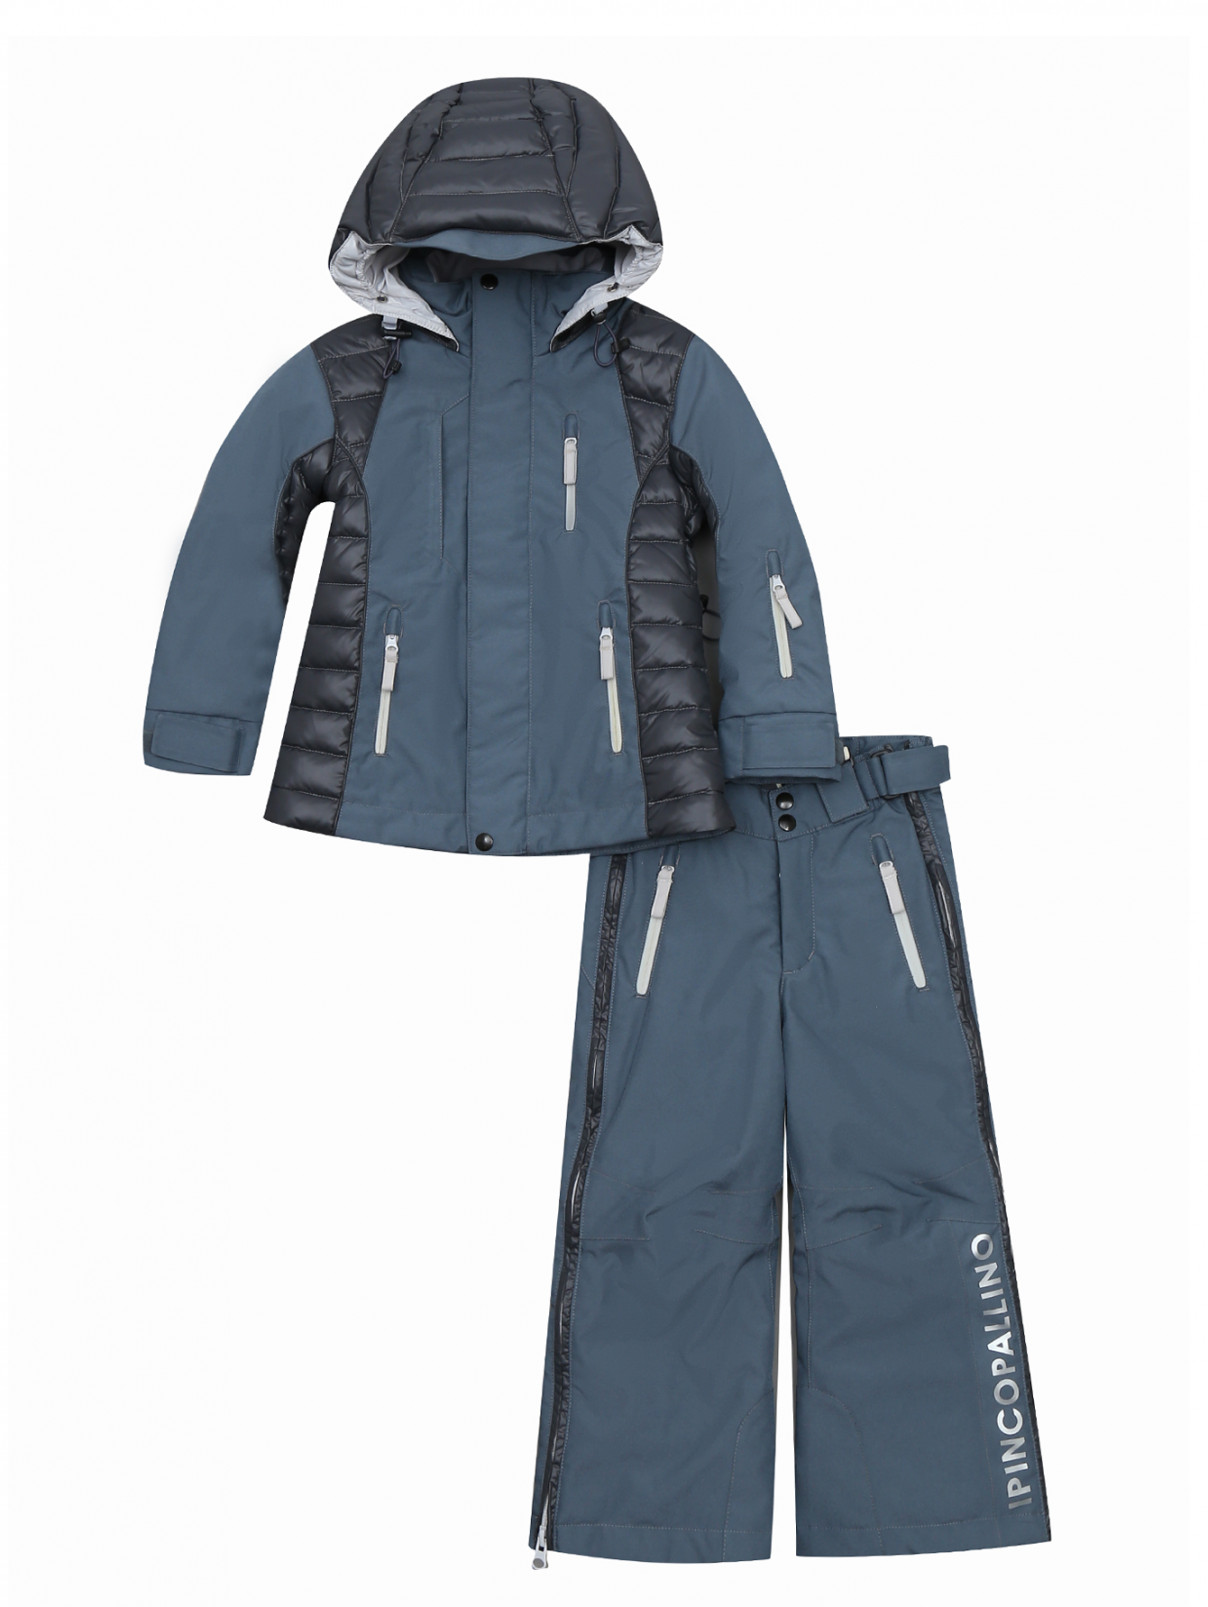 Куртка и комбинезон утепленные с контрастными вставками и принтом I Pinco Pallino  –  Общий вид  – Цвет:  Серый